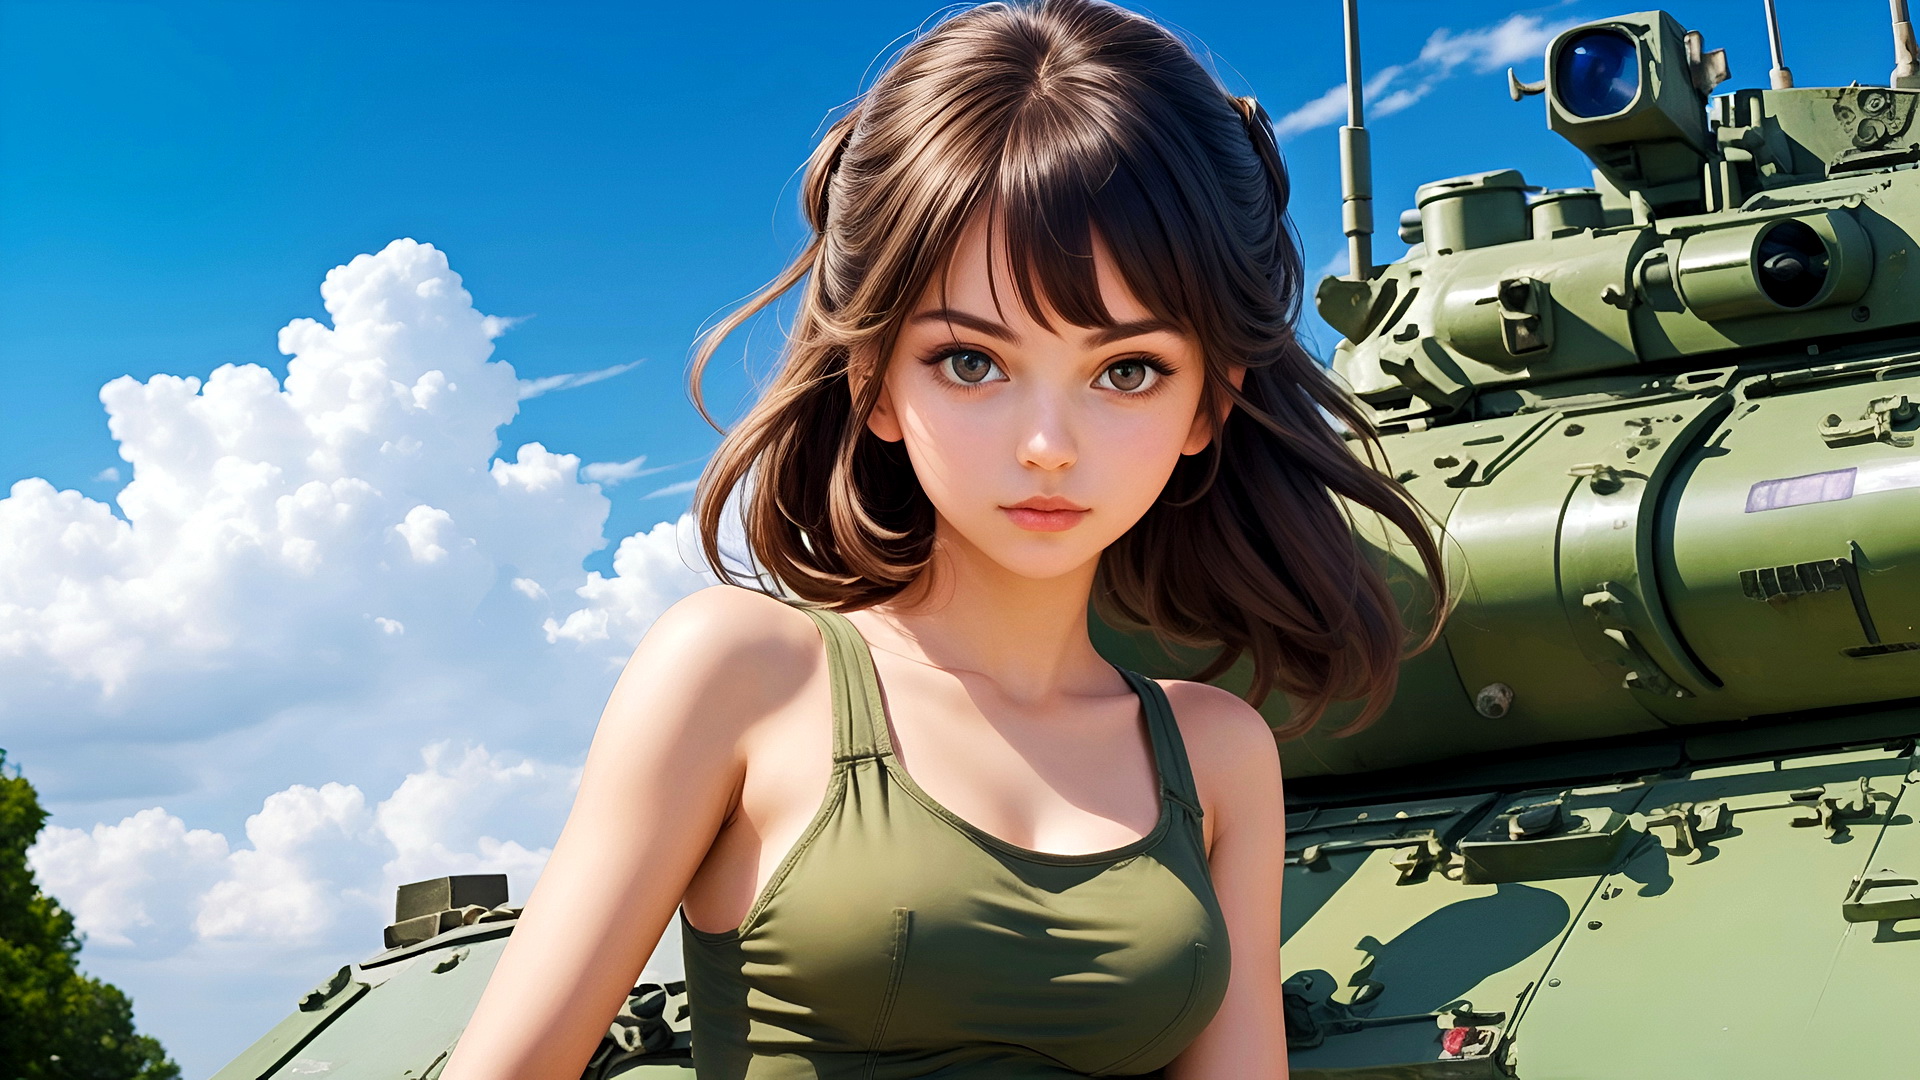 Бесплатное фото Девушка солдат в зеленой майке на фоне танка